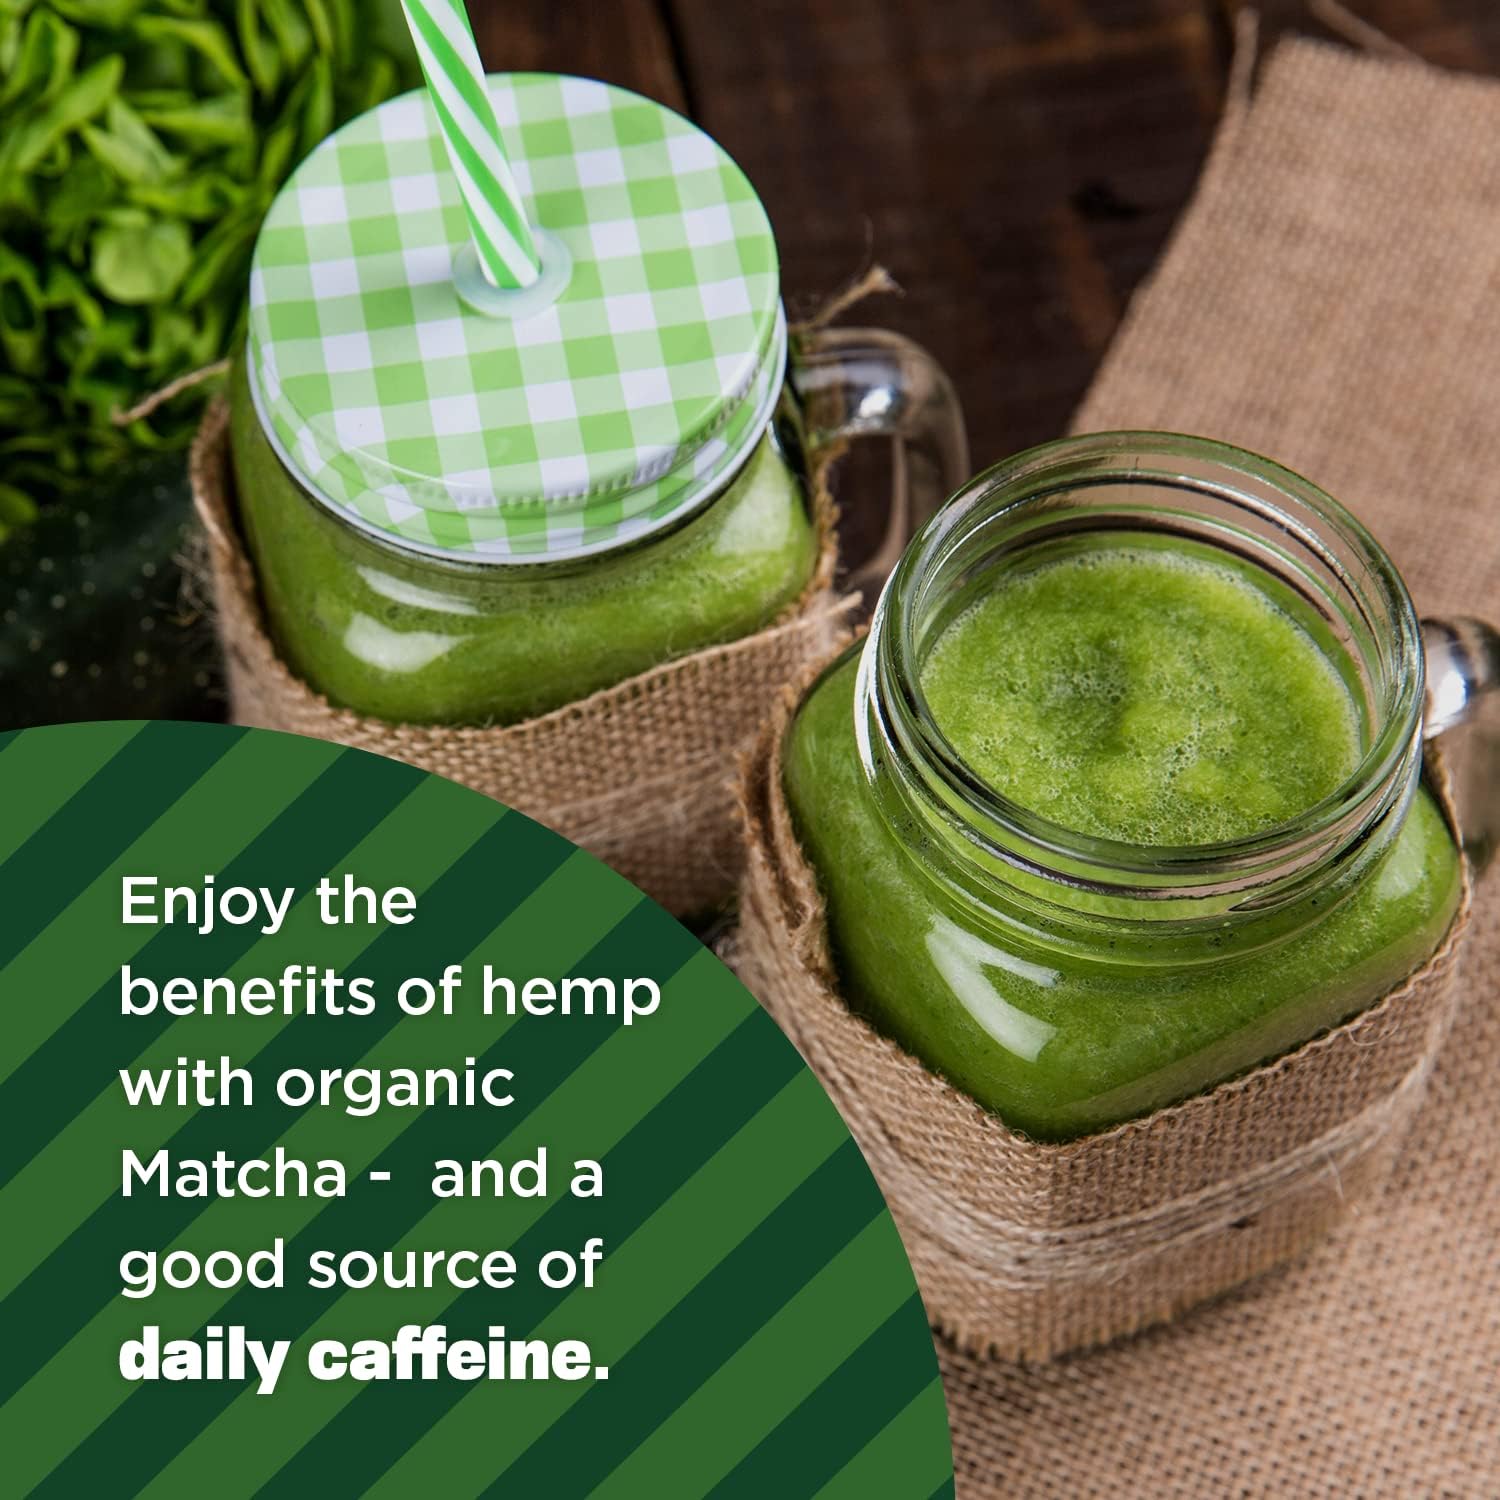 Manitoba Harvest Organic Hemp & Matcha Powder, 5.5 oz – Energy, 6g of 